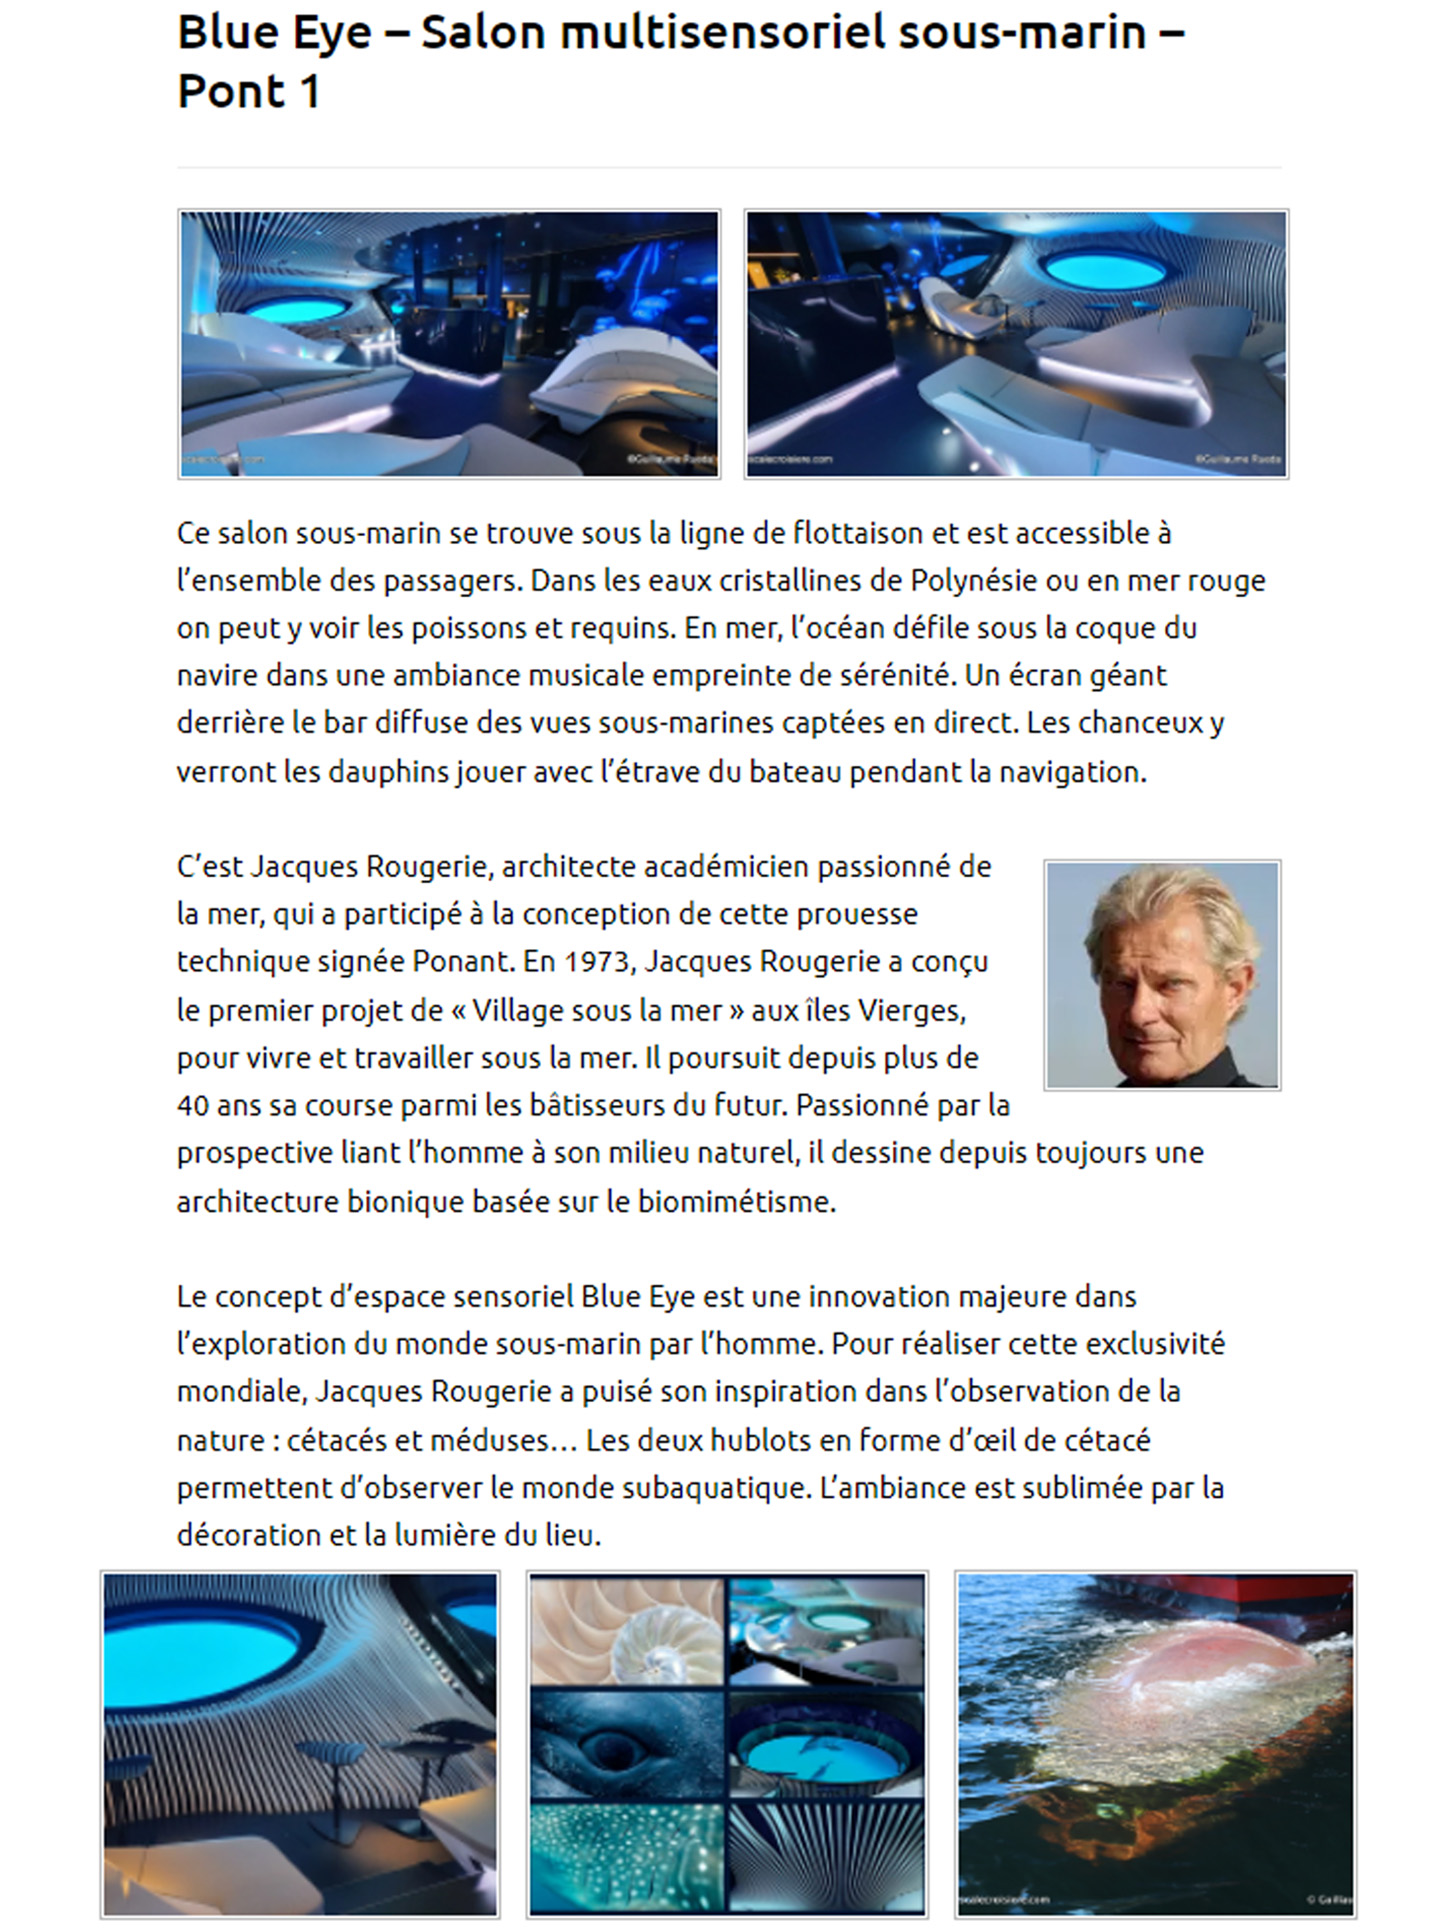 Article sur Le Bougainville du Ponant réalisé par le studio jean-Philippe Nuel dans le magazine escale croisière, bateau de croisière de luxe, architecture d'intérieur